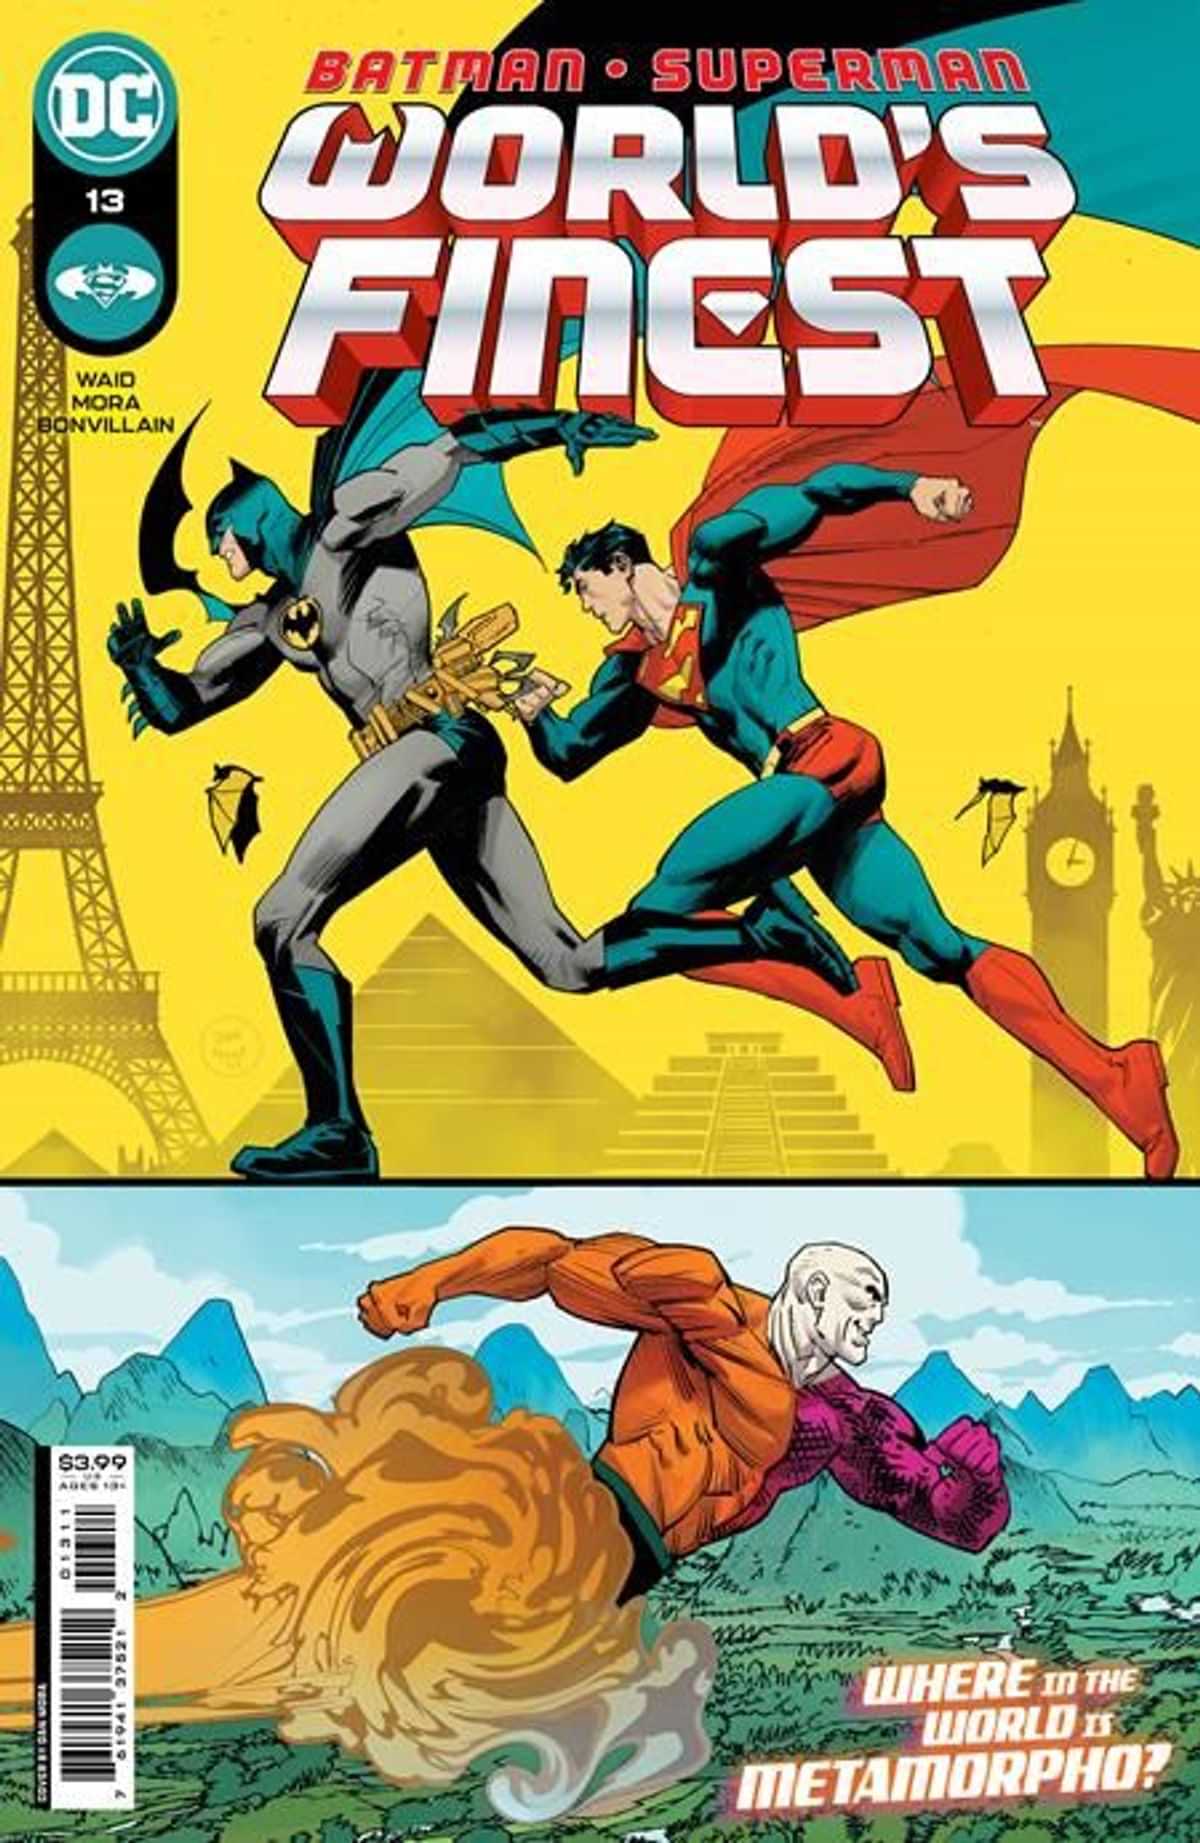 Batman Superman Worlds Finest #13 CVR A Dan Mora - Zeus Comics, Dallas, TX